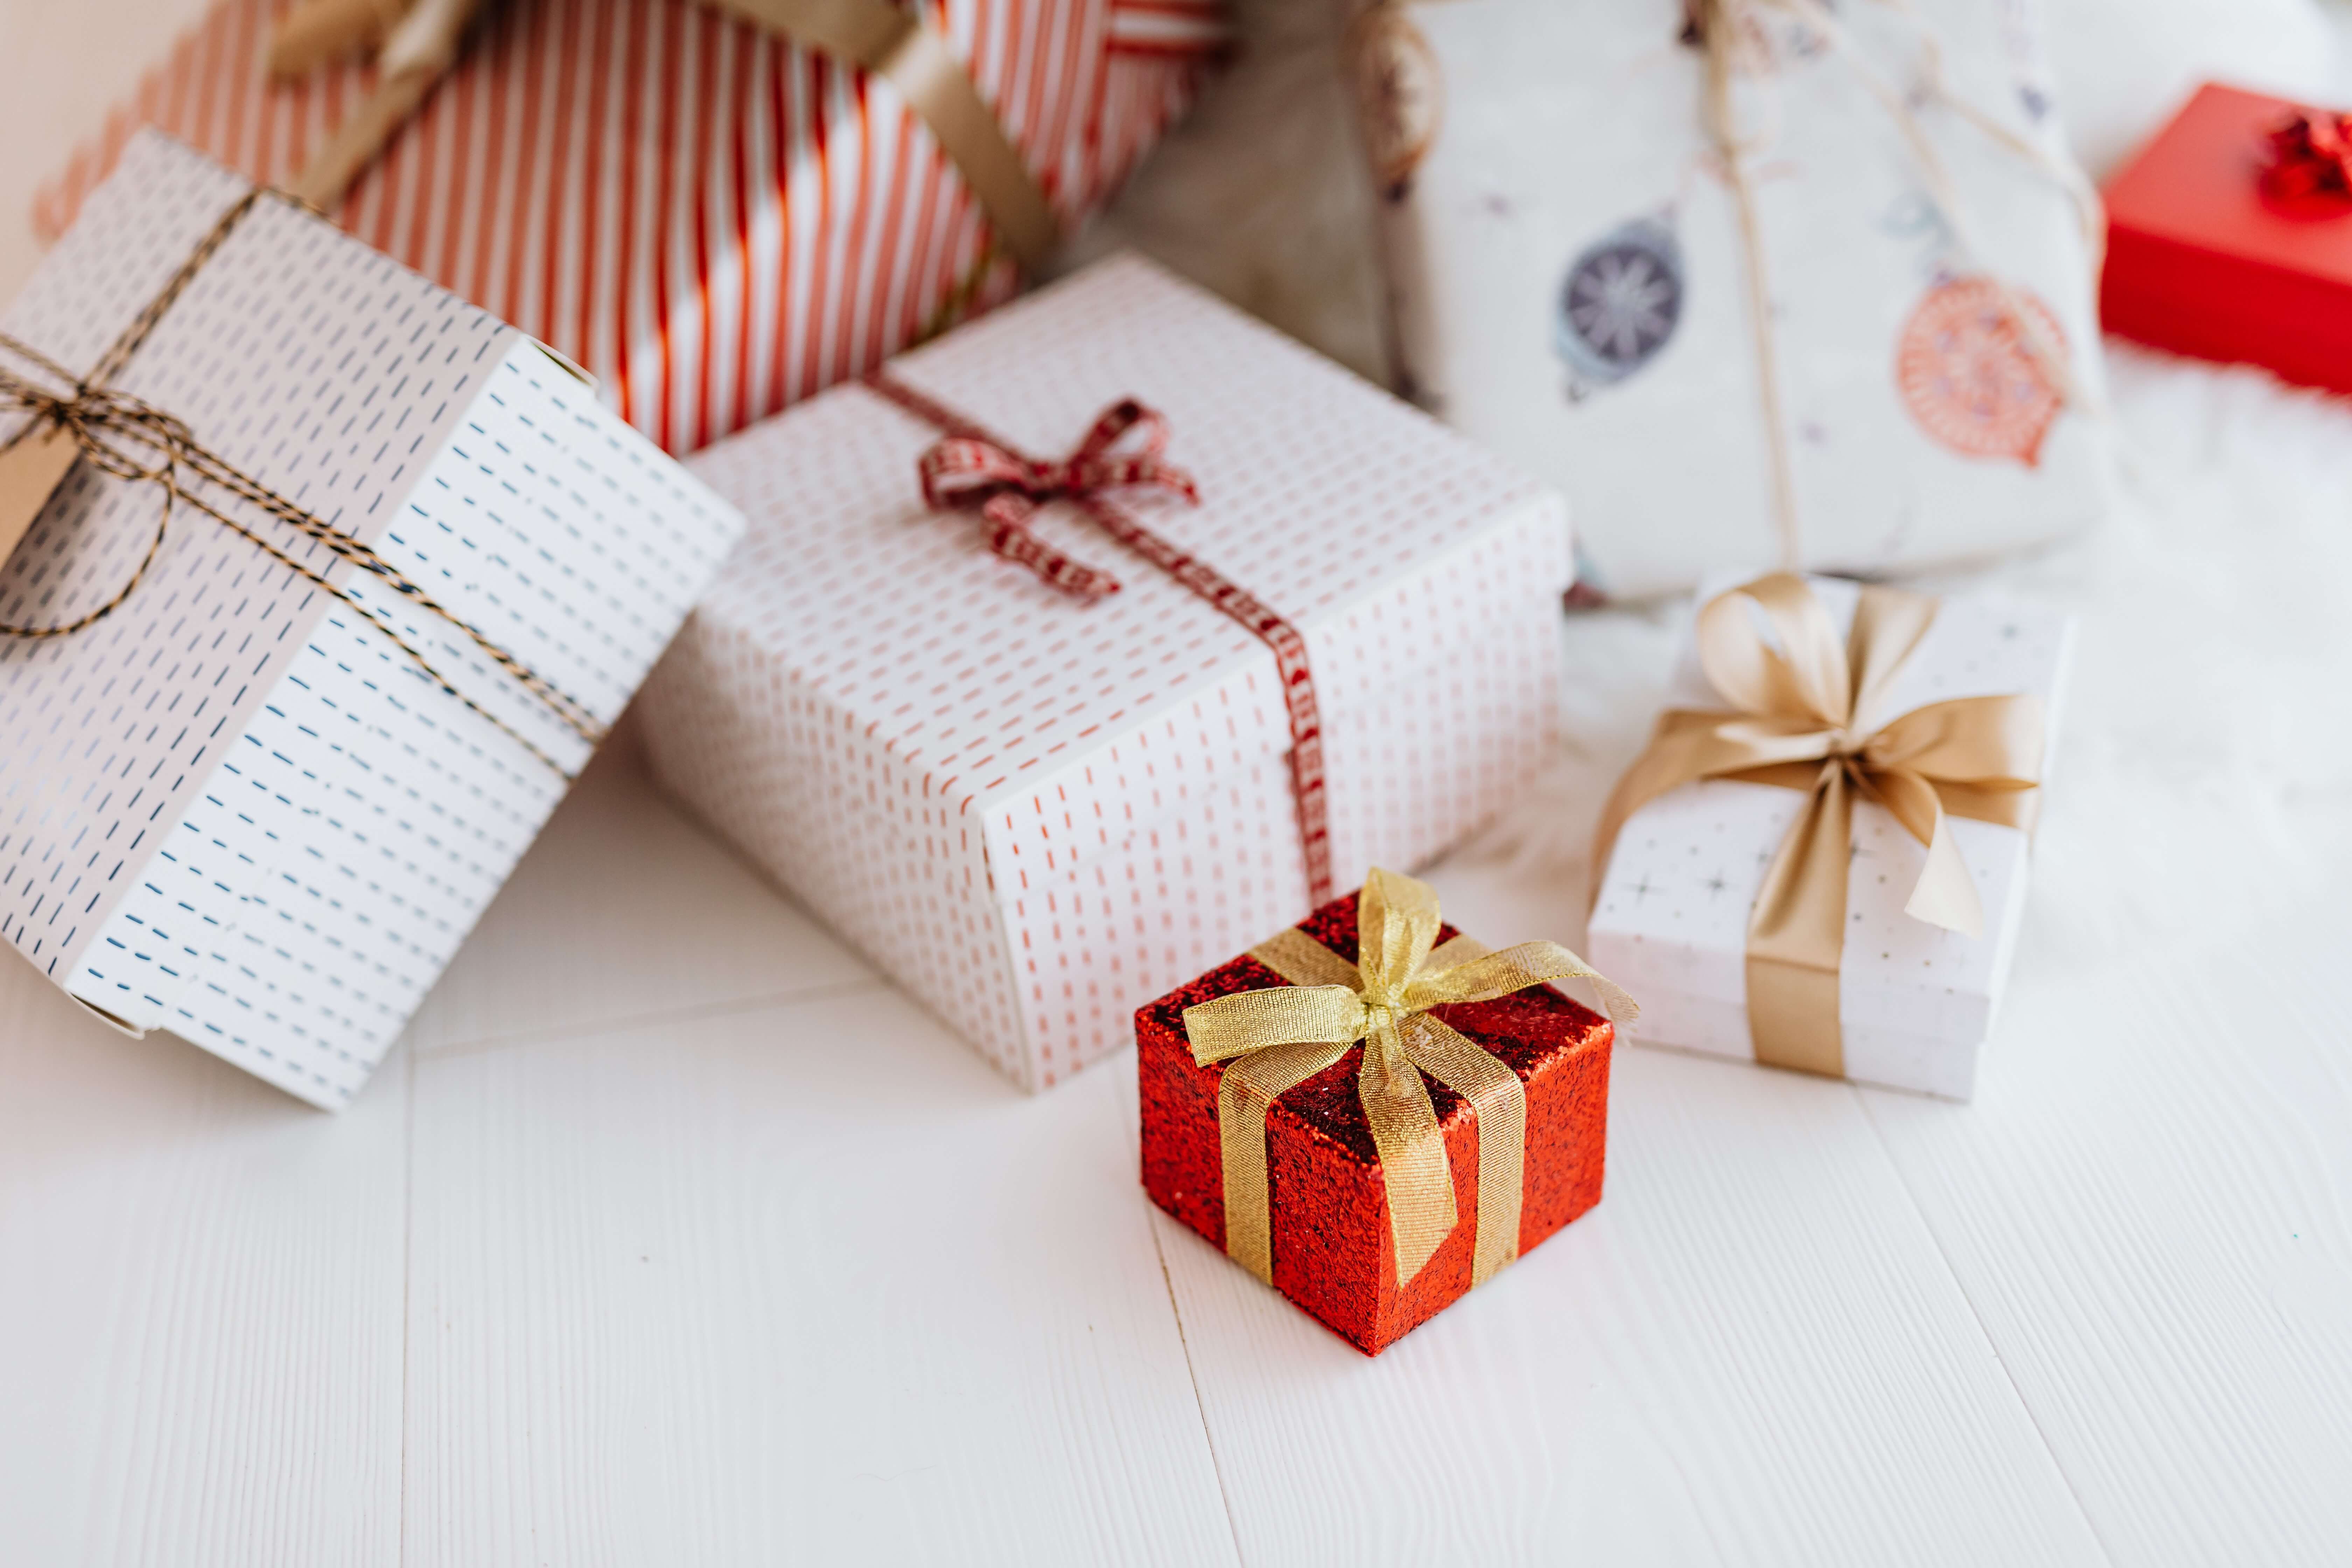 Verschiedene Geschenkverpackungen in unterschiedlichen Größen, eingewickelt in vielfältigem Geschenkpapier und verziert mit bunten Schleifenbändern